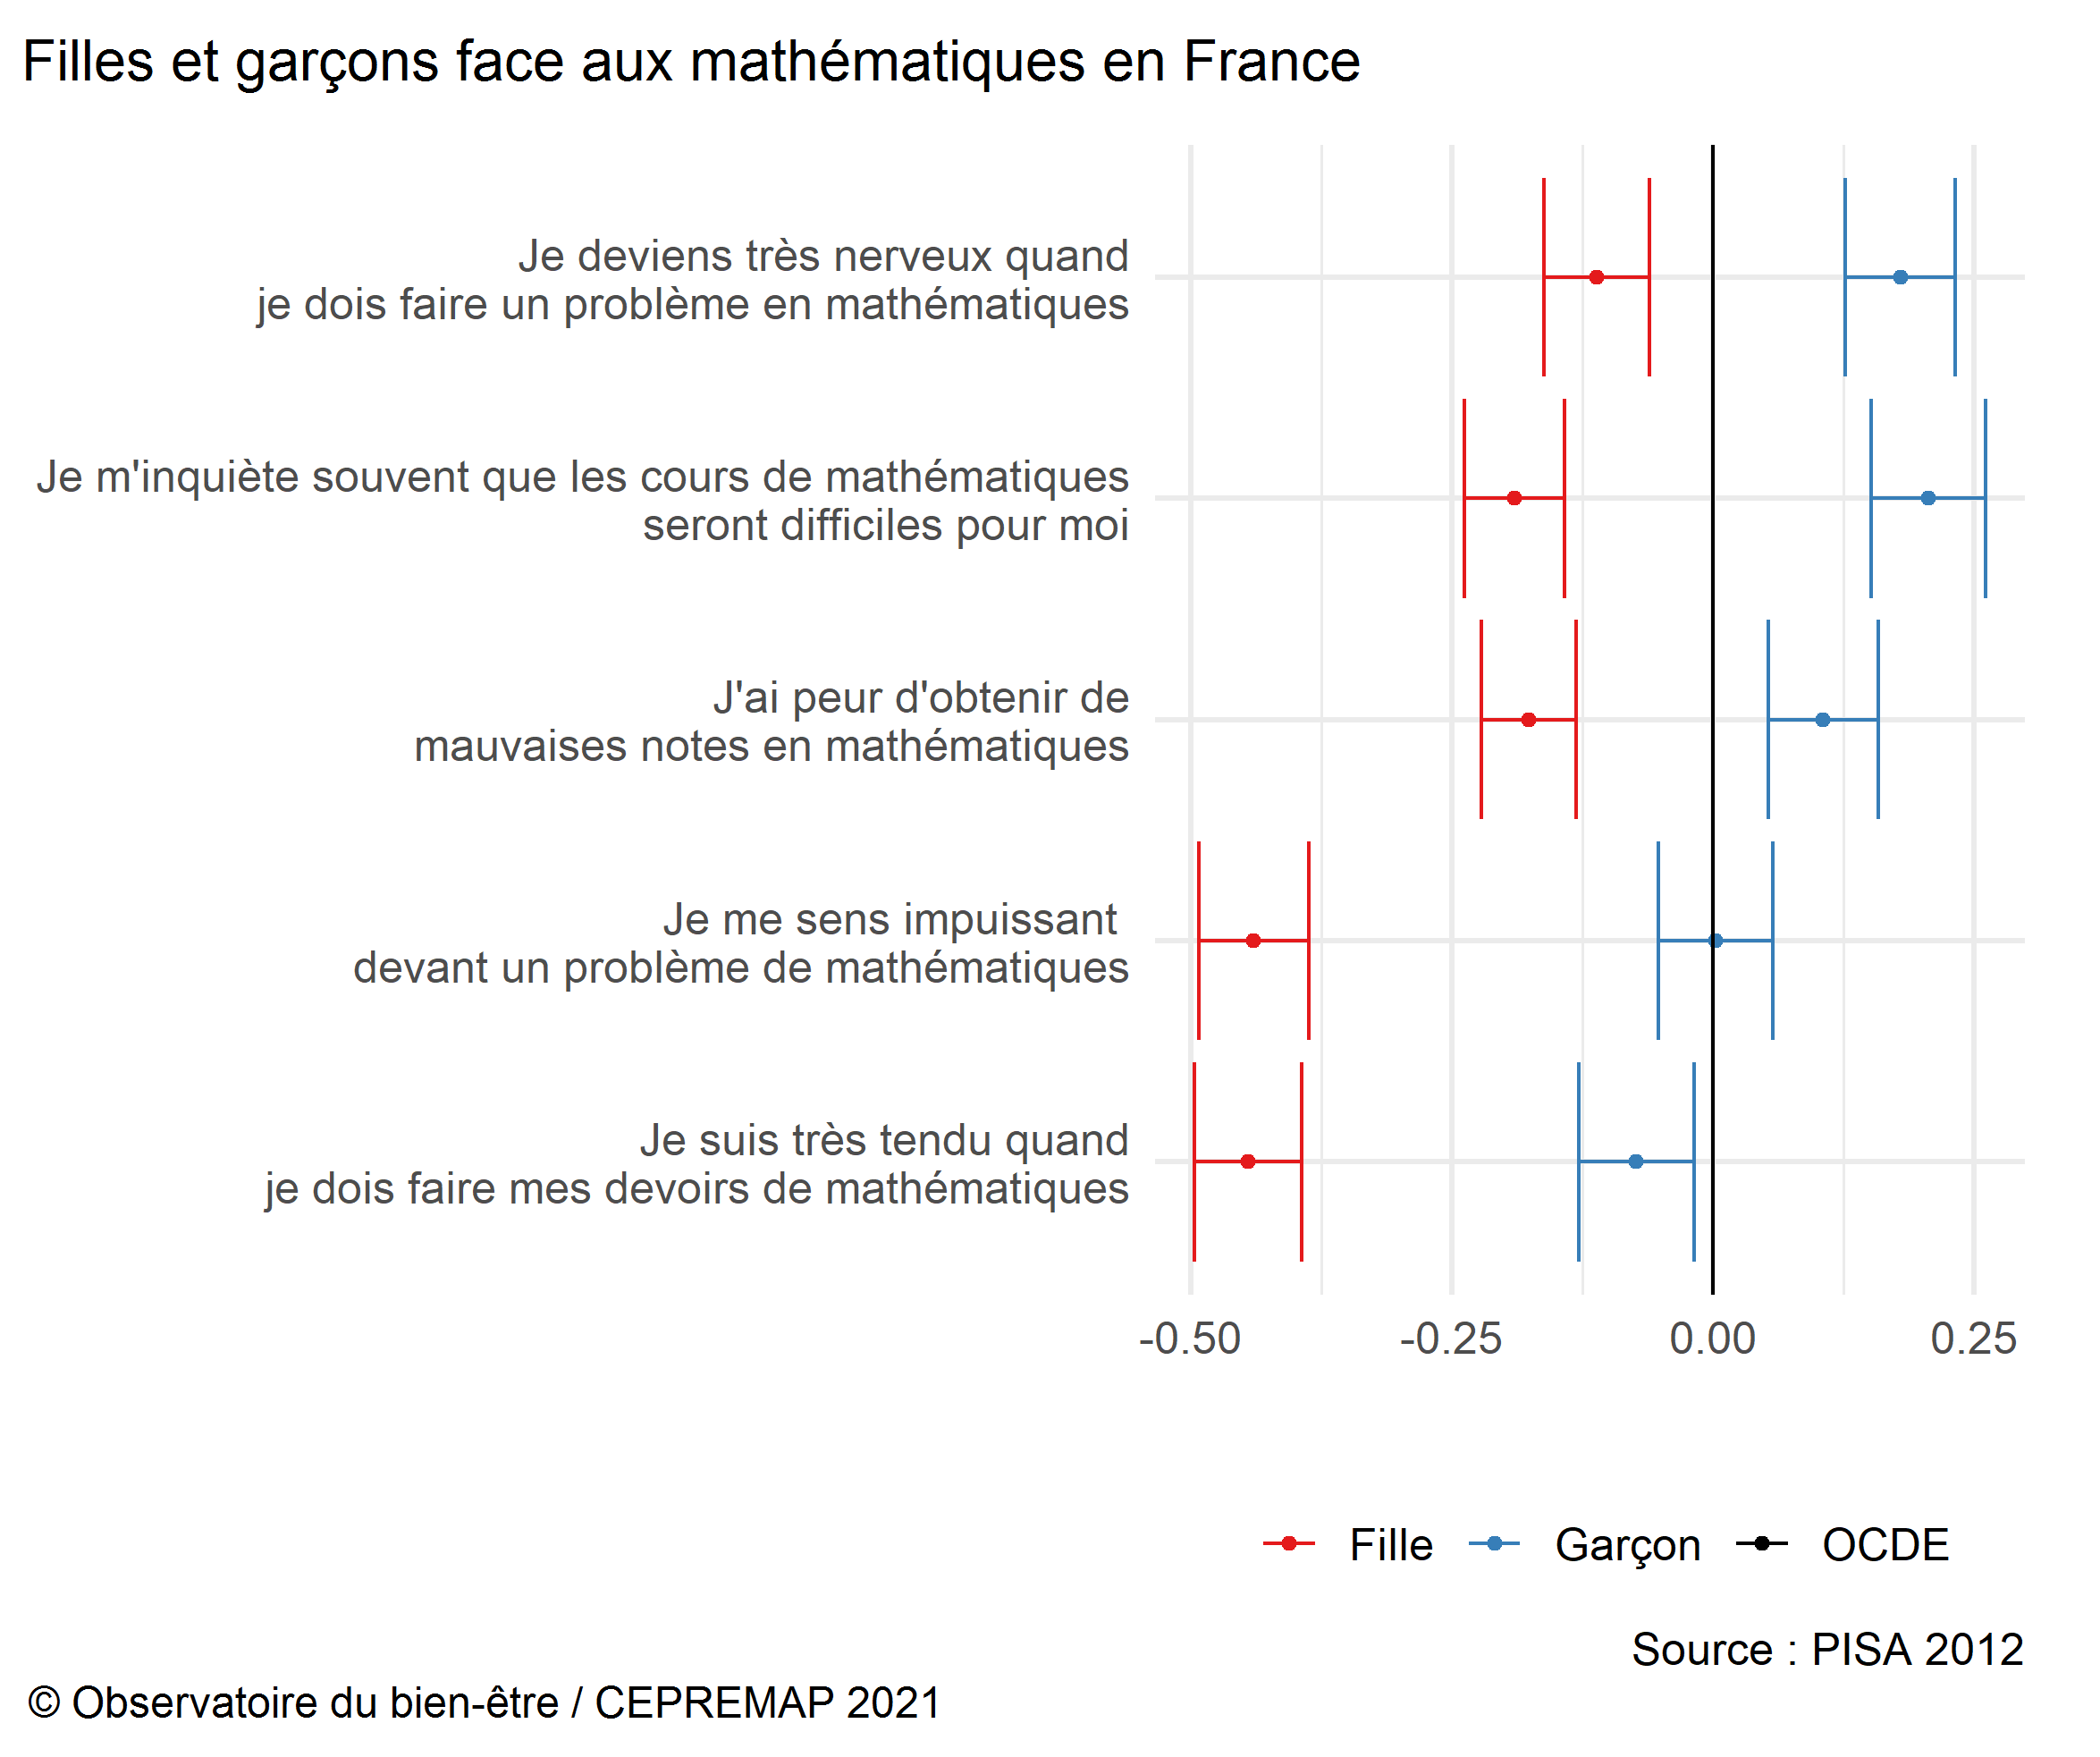 Figure : Filles et garçons face aux mathématiques en France